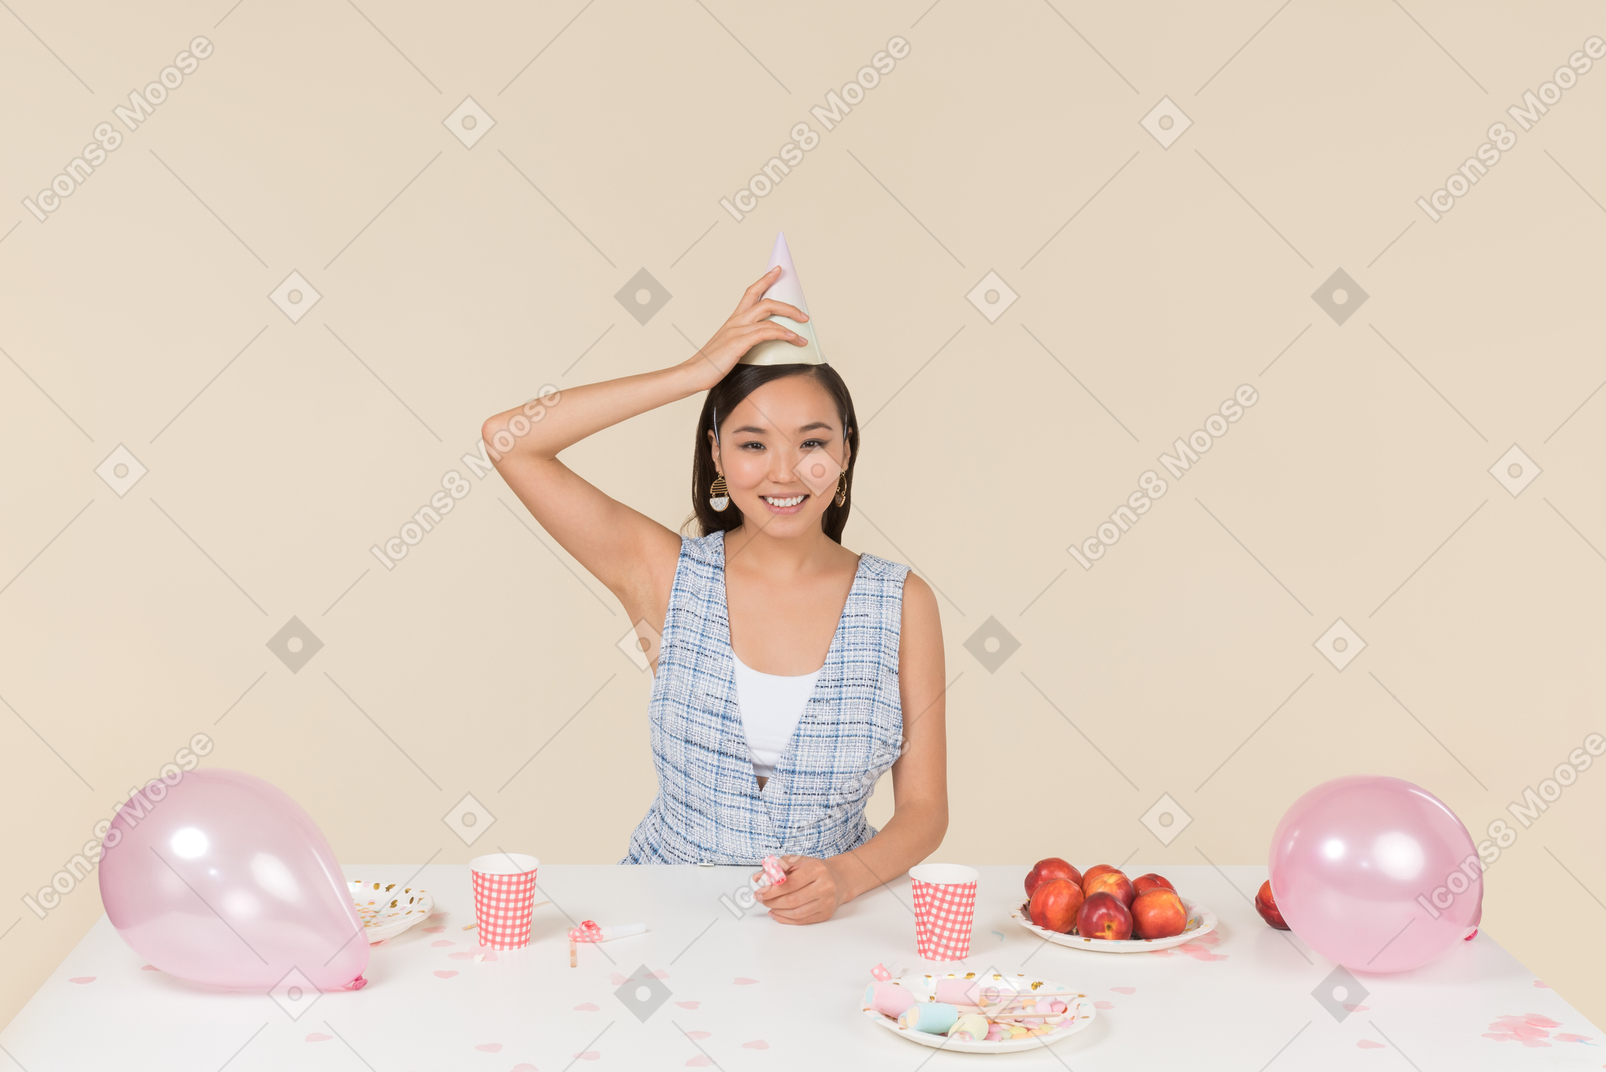 Jeune femme asiatique ajustant le cône d'anniversaire sur sa tête